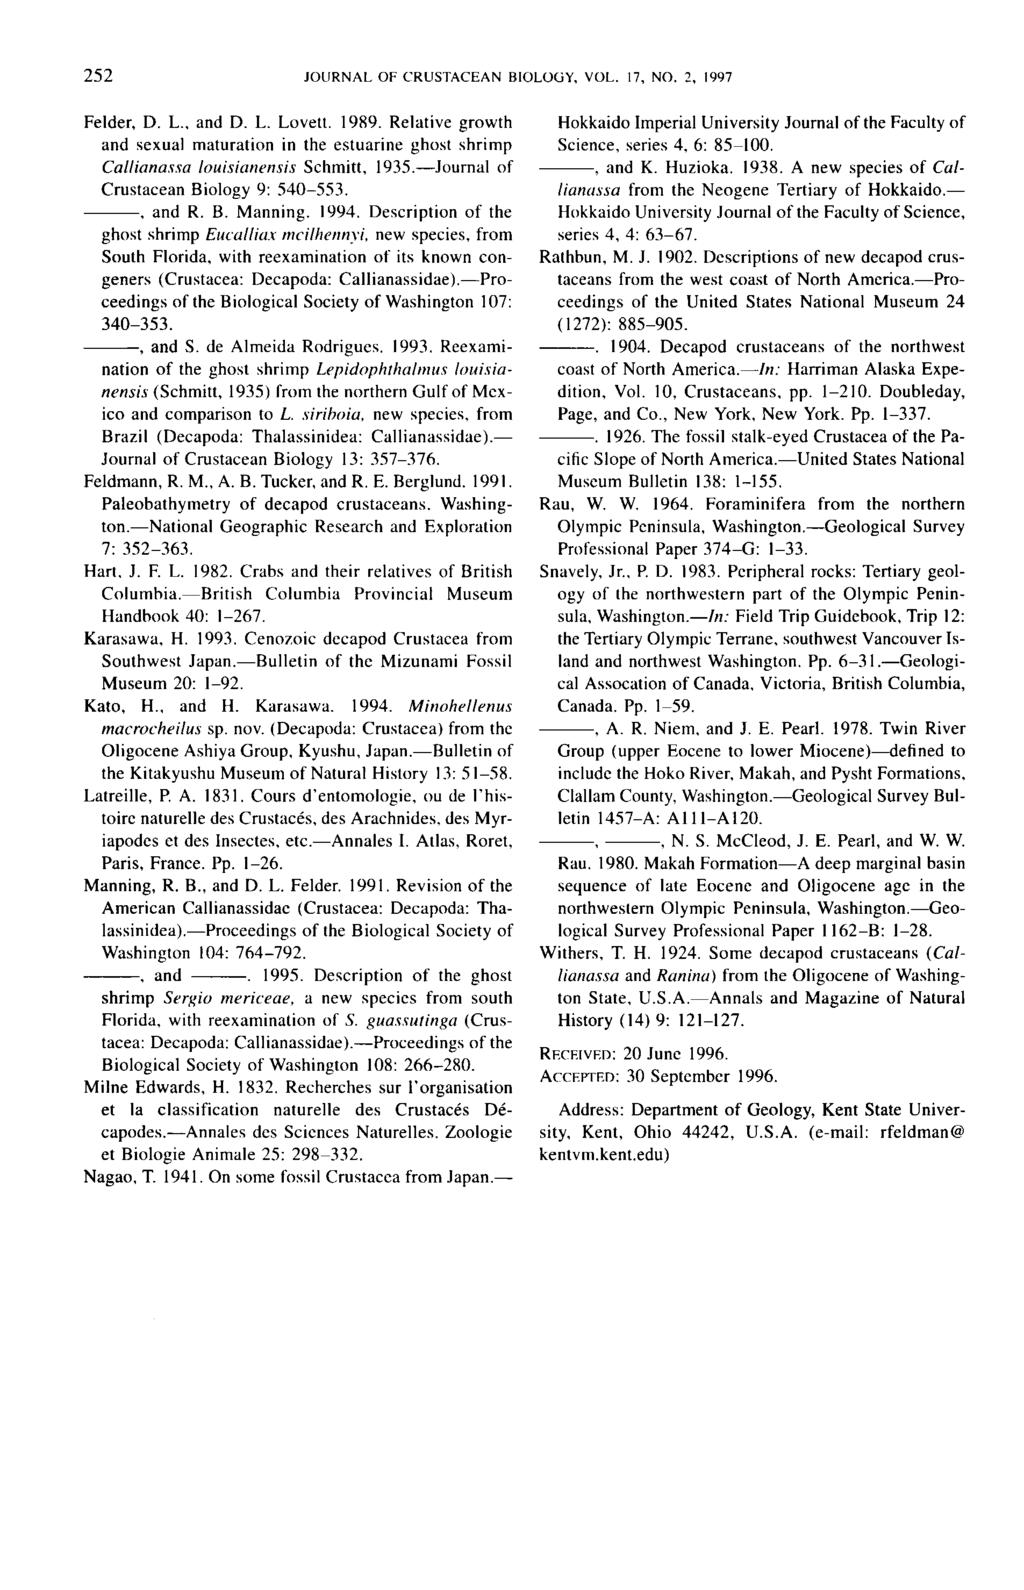 Felder, D. L., and D. L. Lovett. 1989. Relative growth and sexual maturation in the estuarine ghost shrimp Callianassa louisinnensis Schmitt, 1935.-Journal of Crustacean Biology 9: 540-553.